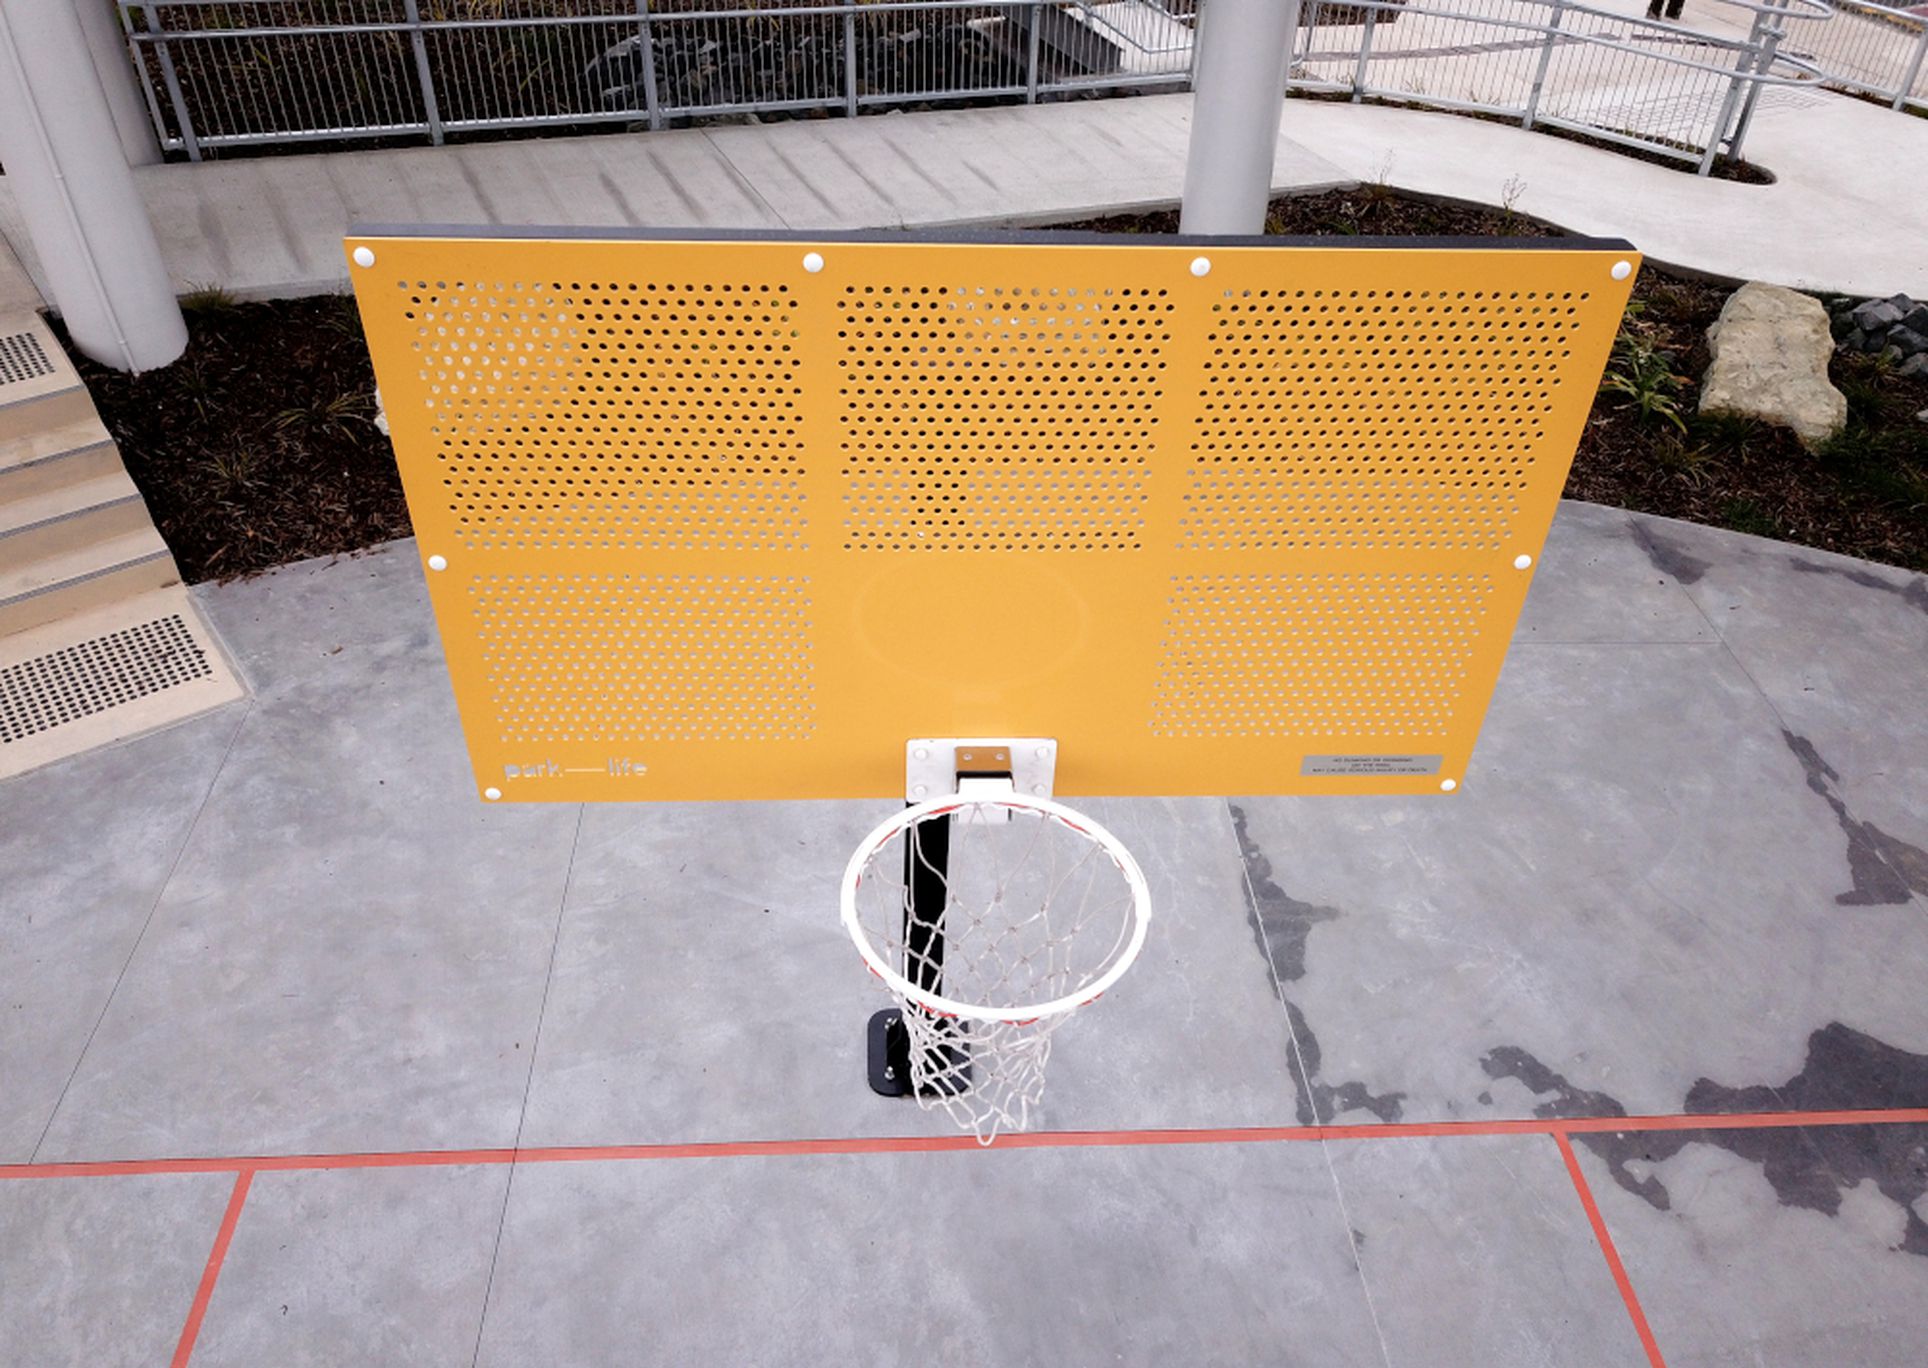 Grizzly Basketball Hoop with Yellow Alu Backboard